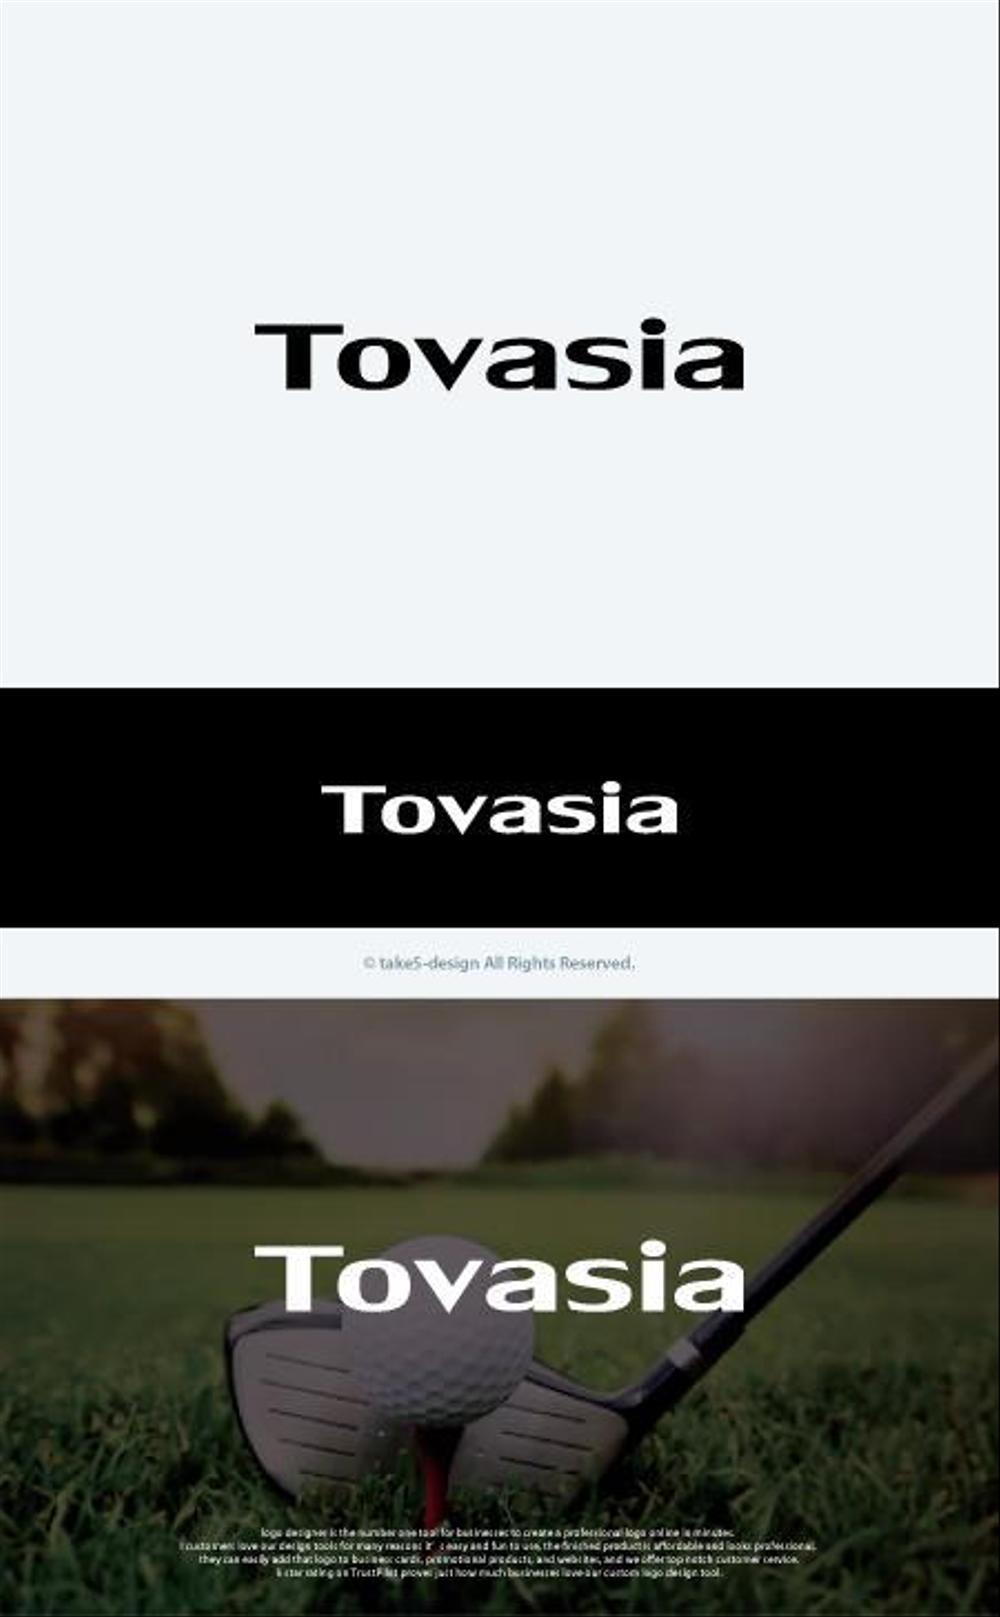 ゴルフクラブ、新ドライバー「トバシア」のロゴ